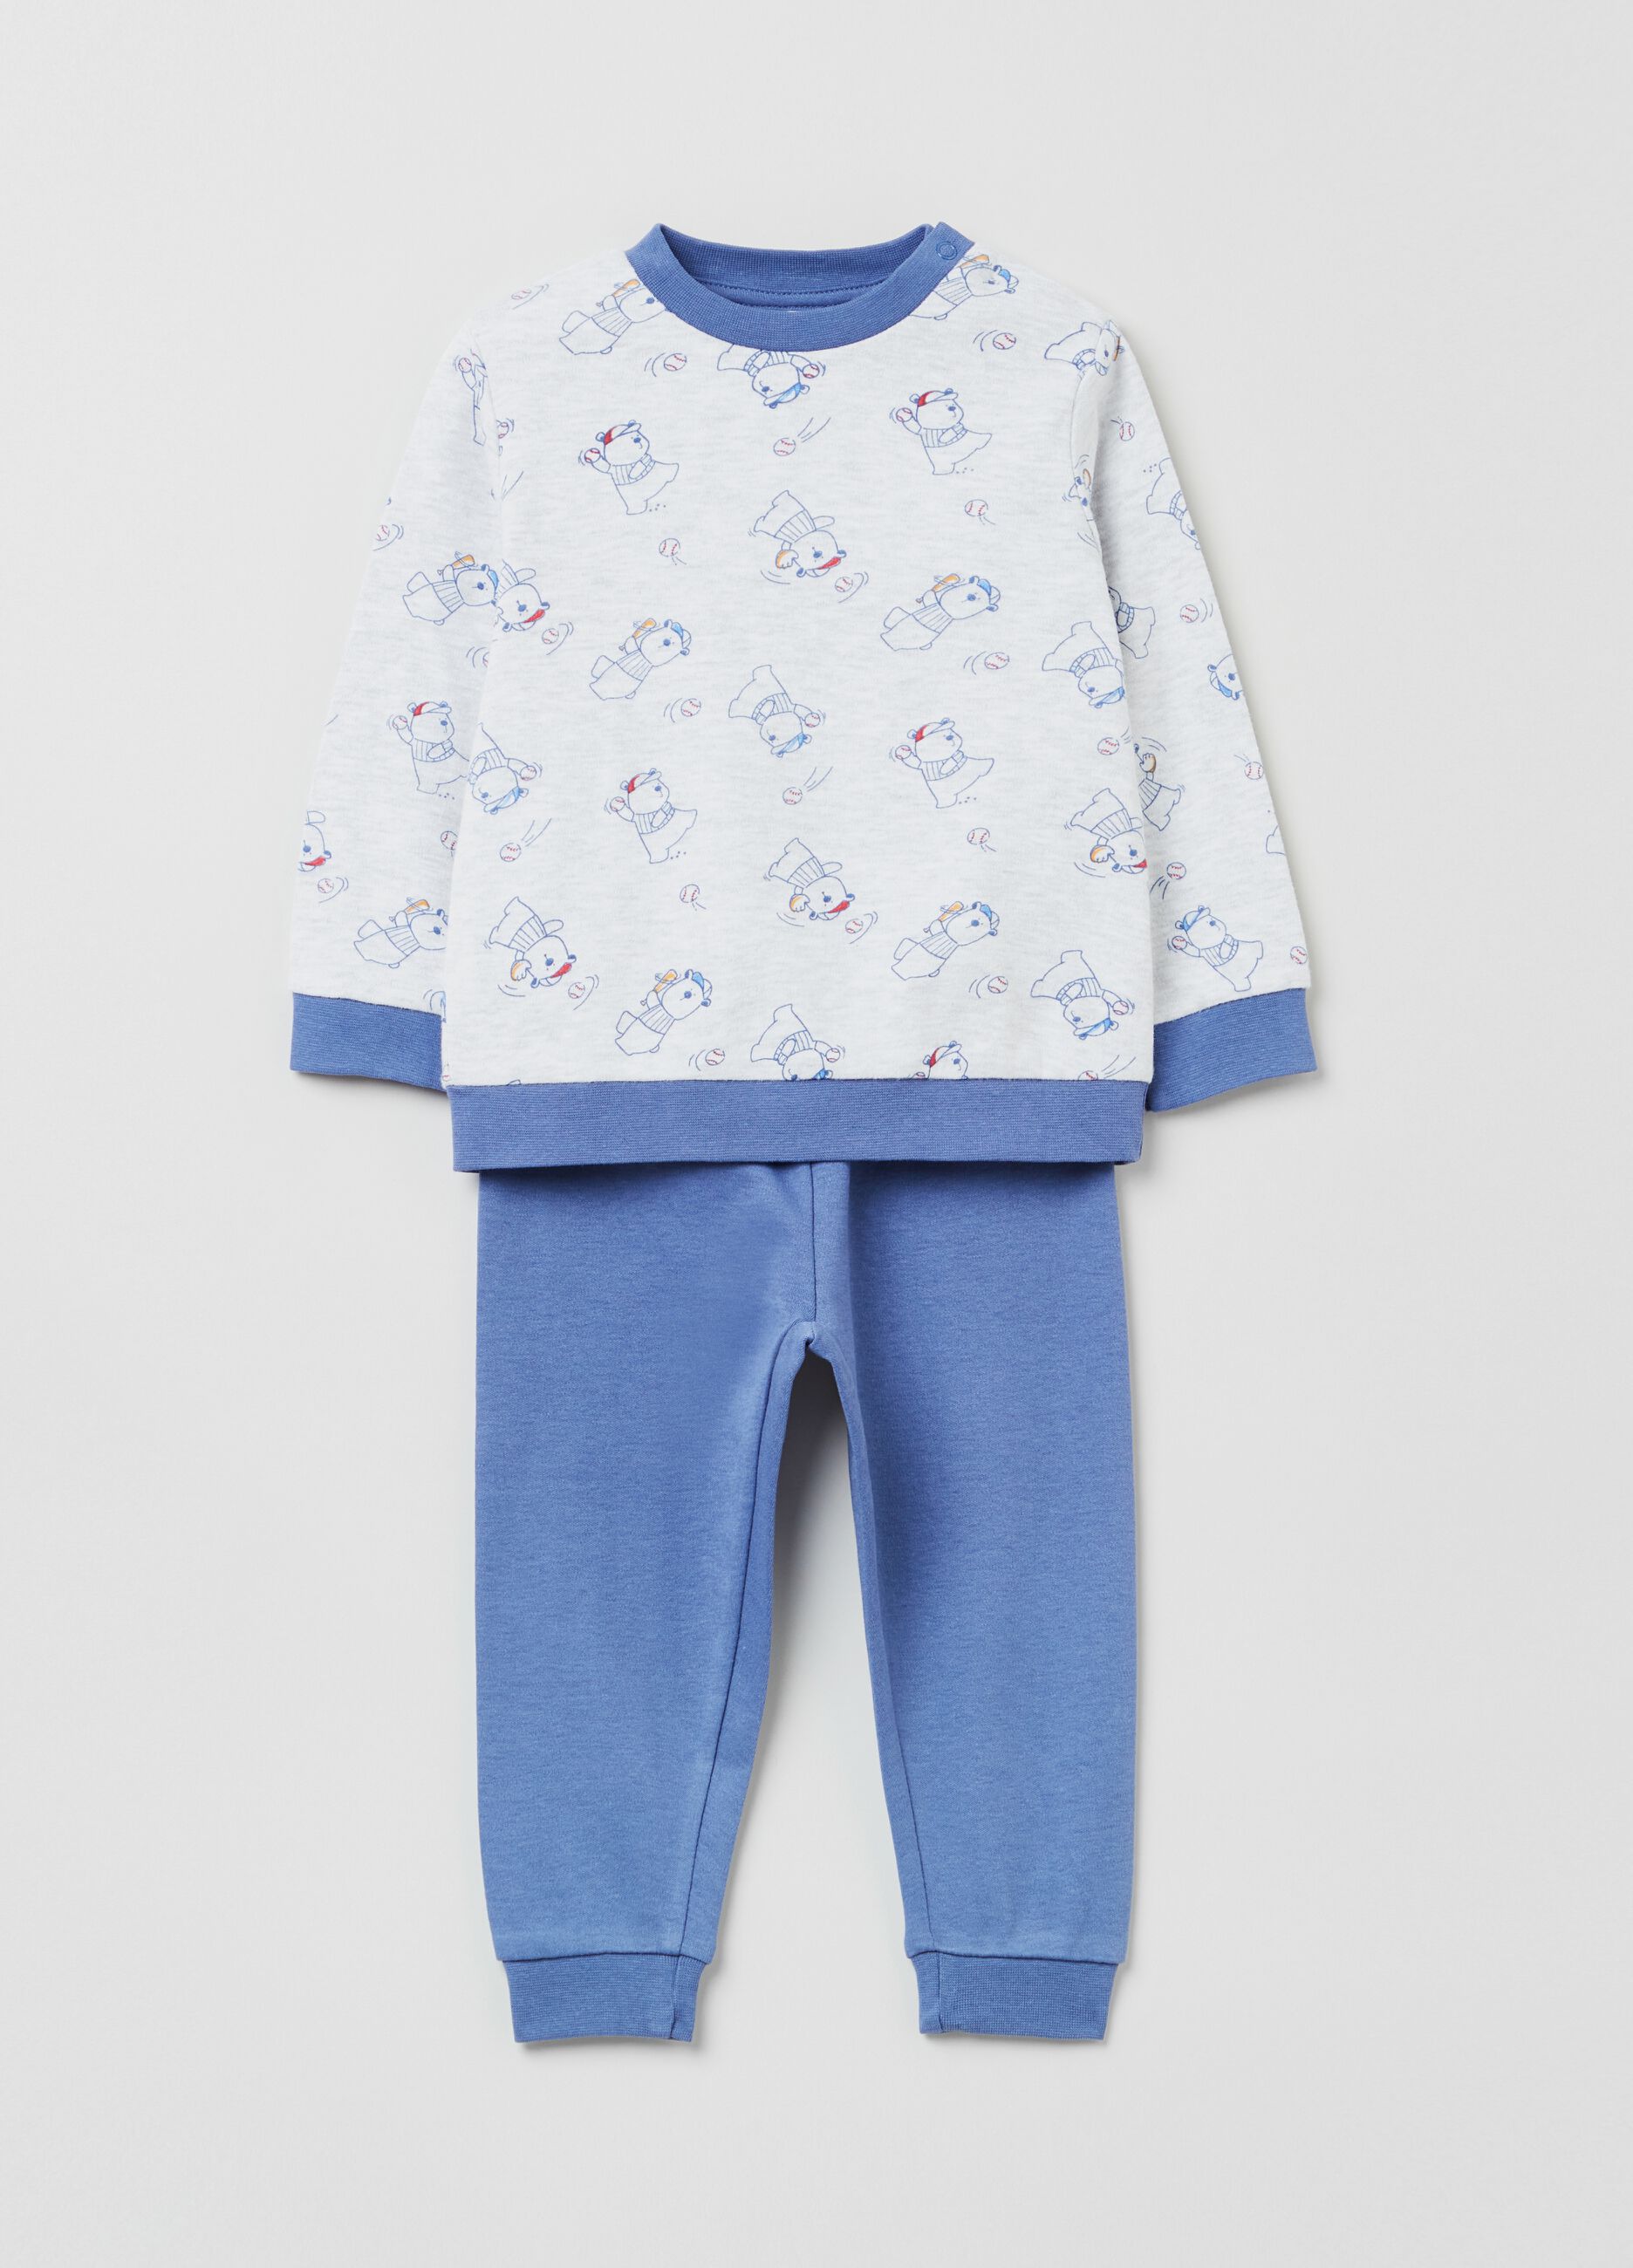 Long pyjamas with bear pattern